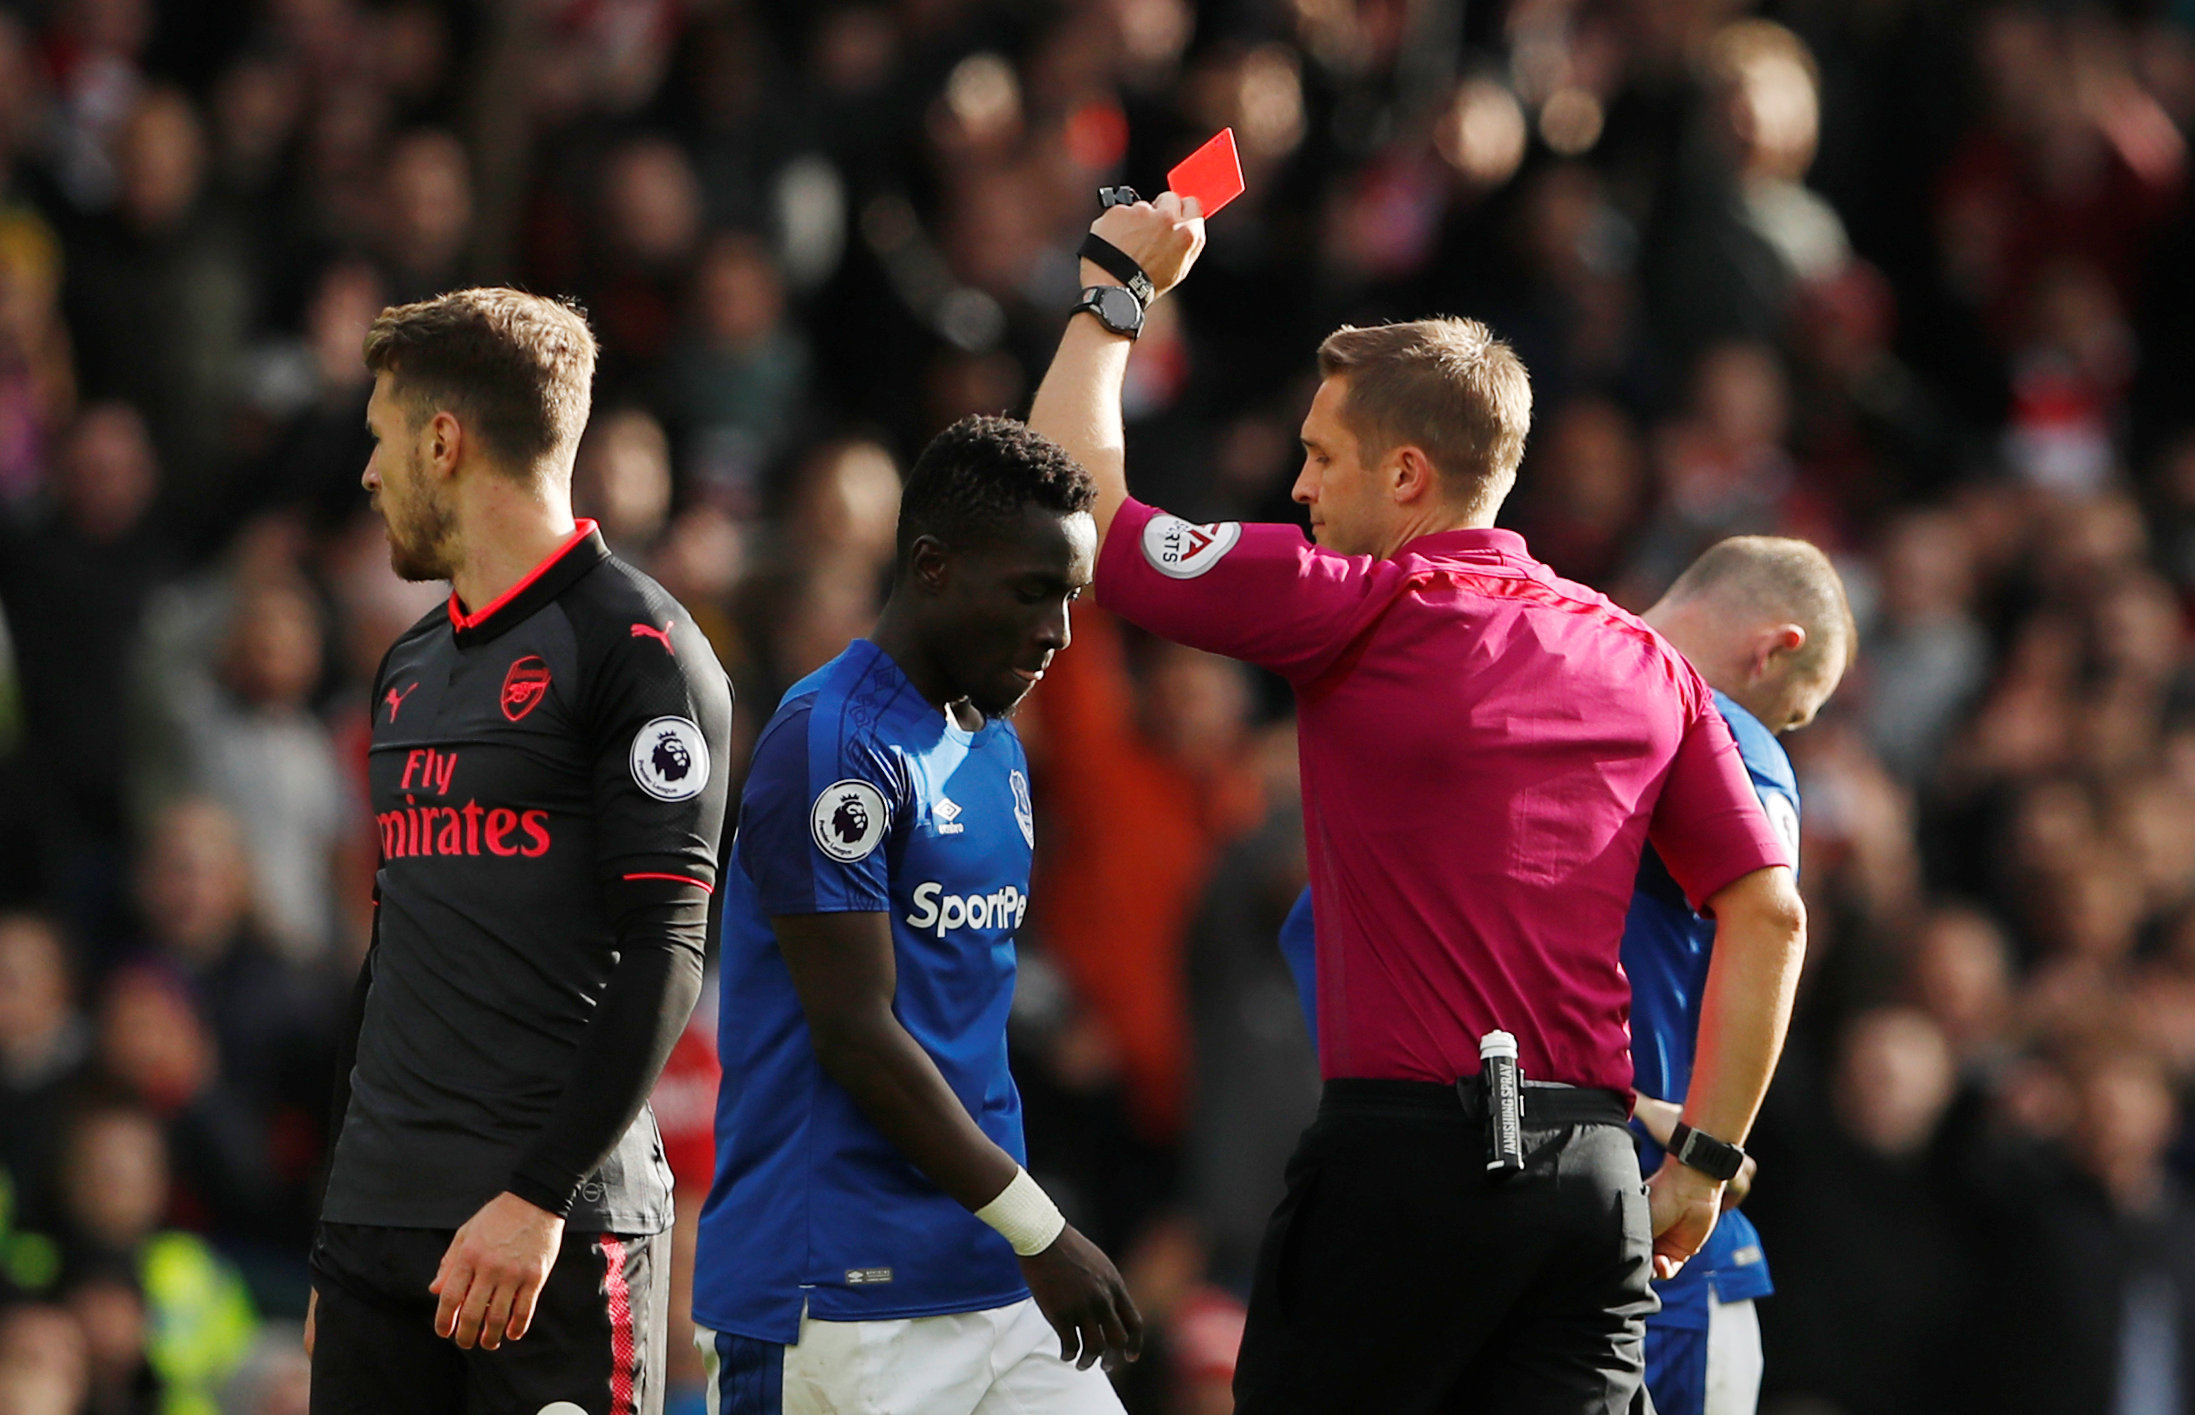 Idrissa Gana Gueye (xanh) nhận thẻ đỏ sau pha vào bóng nguy hiểm với Xhaka. Ảnh: REUTERS